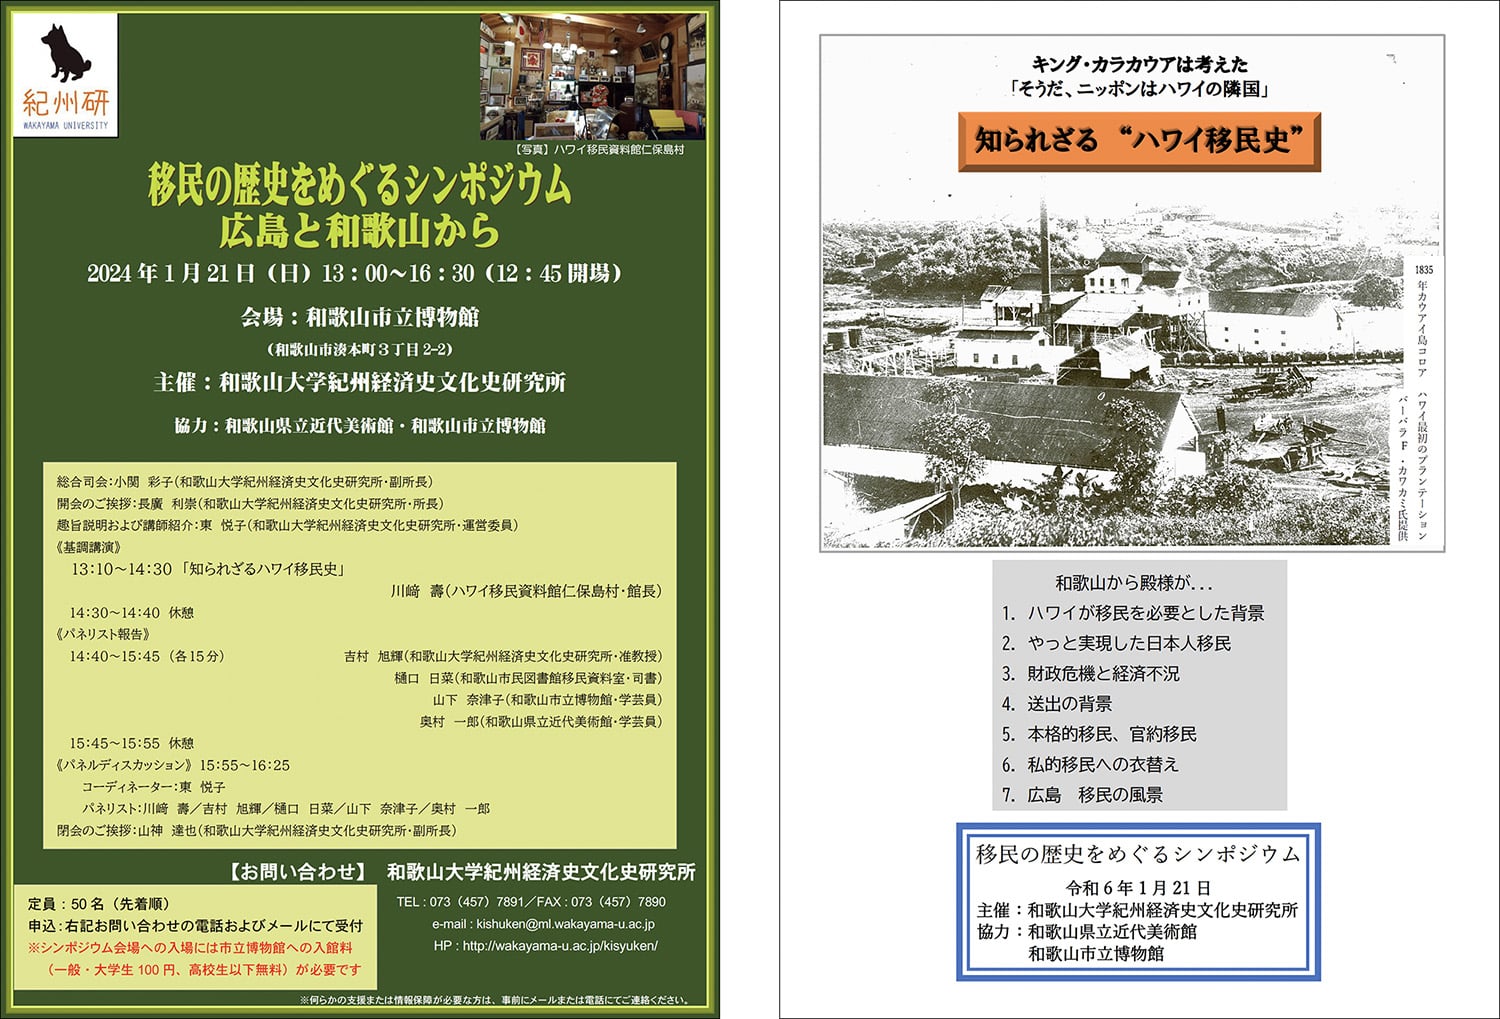 和歌山大学主催「移民の歴史をめぐるシンポジウム・広島と和歌山から」の基調講演